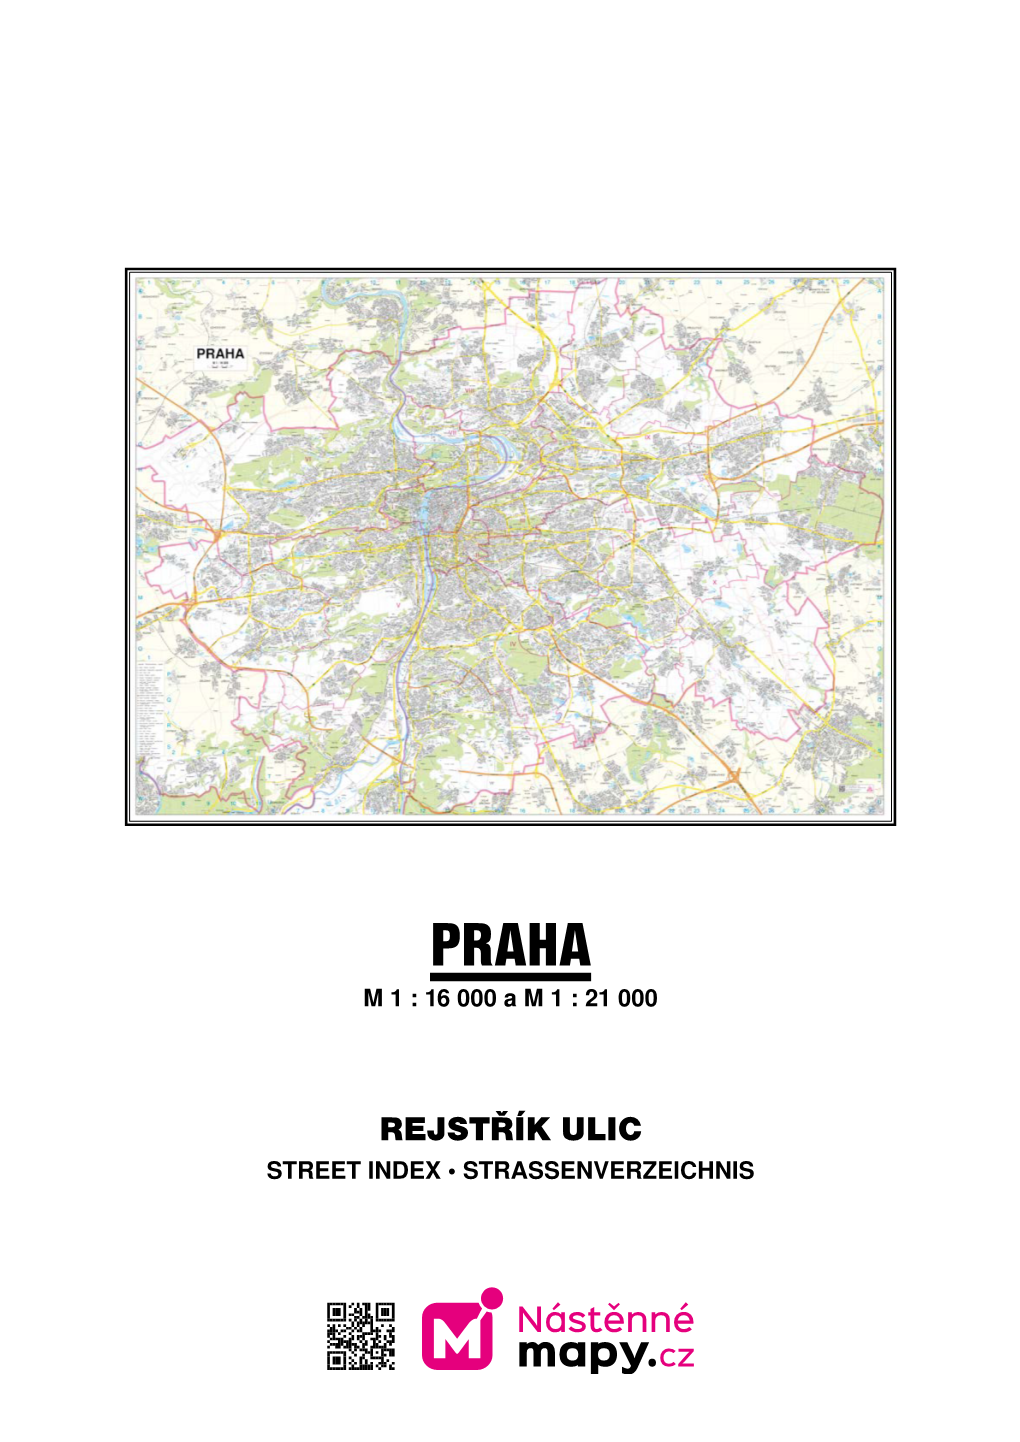 Rejstřík Ulic Street Index • Strassenverzeichnis